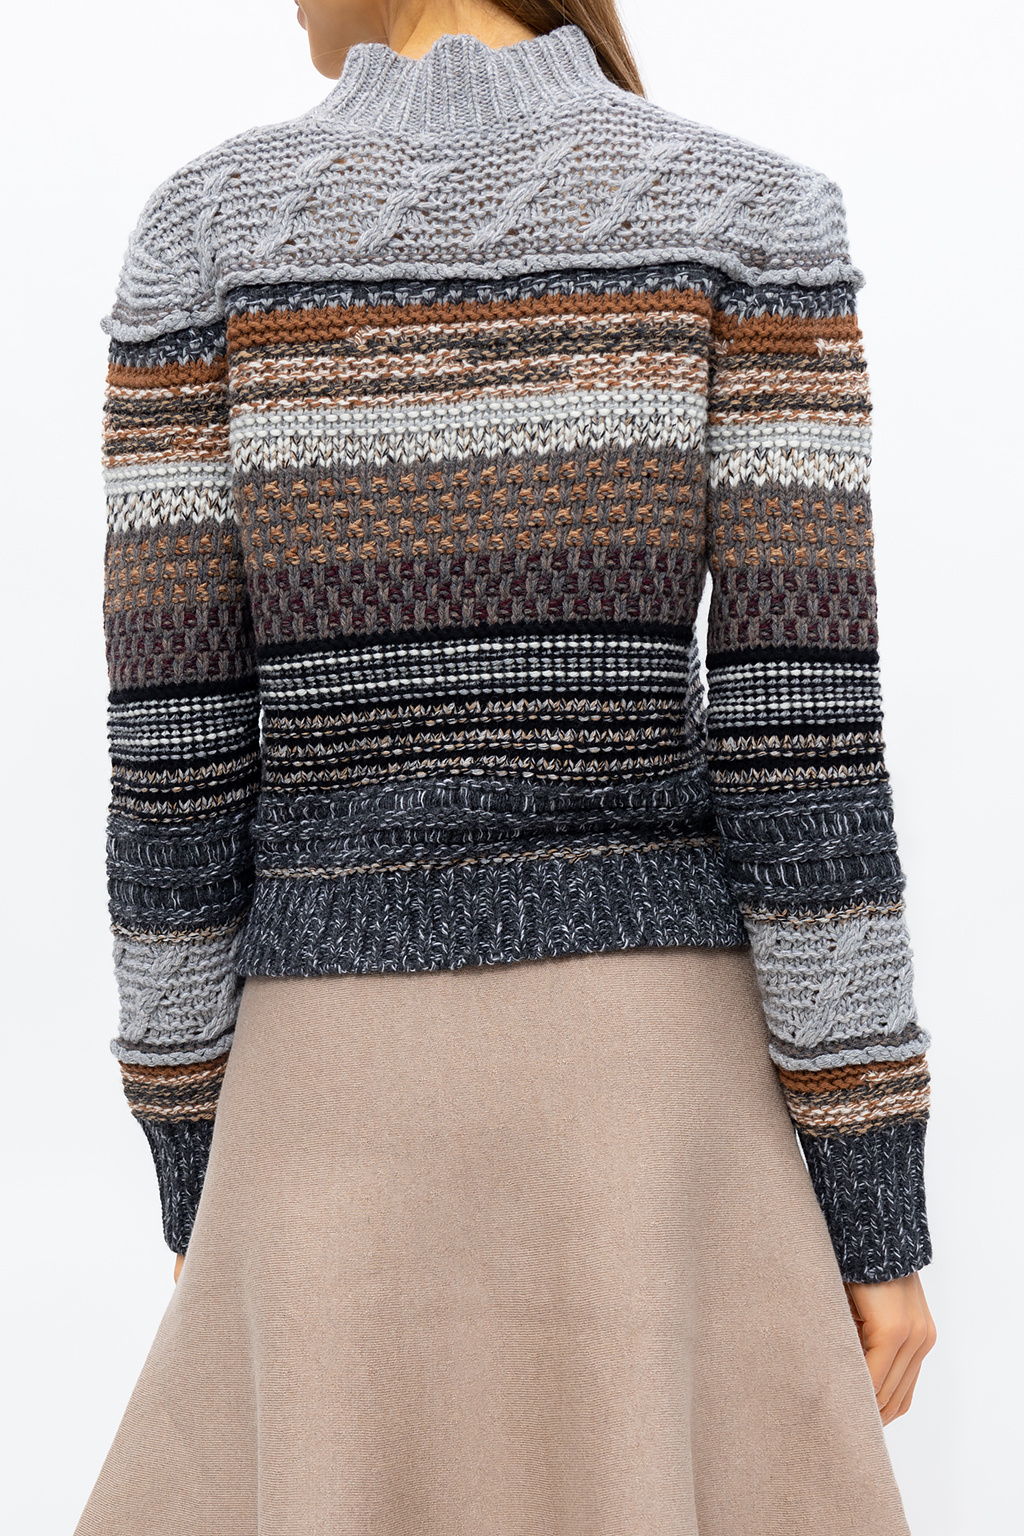 Chloé blazer sweater